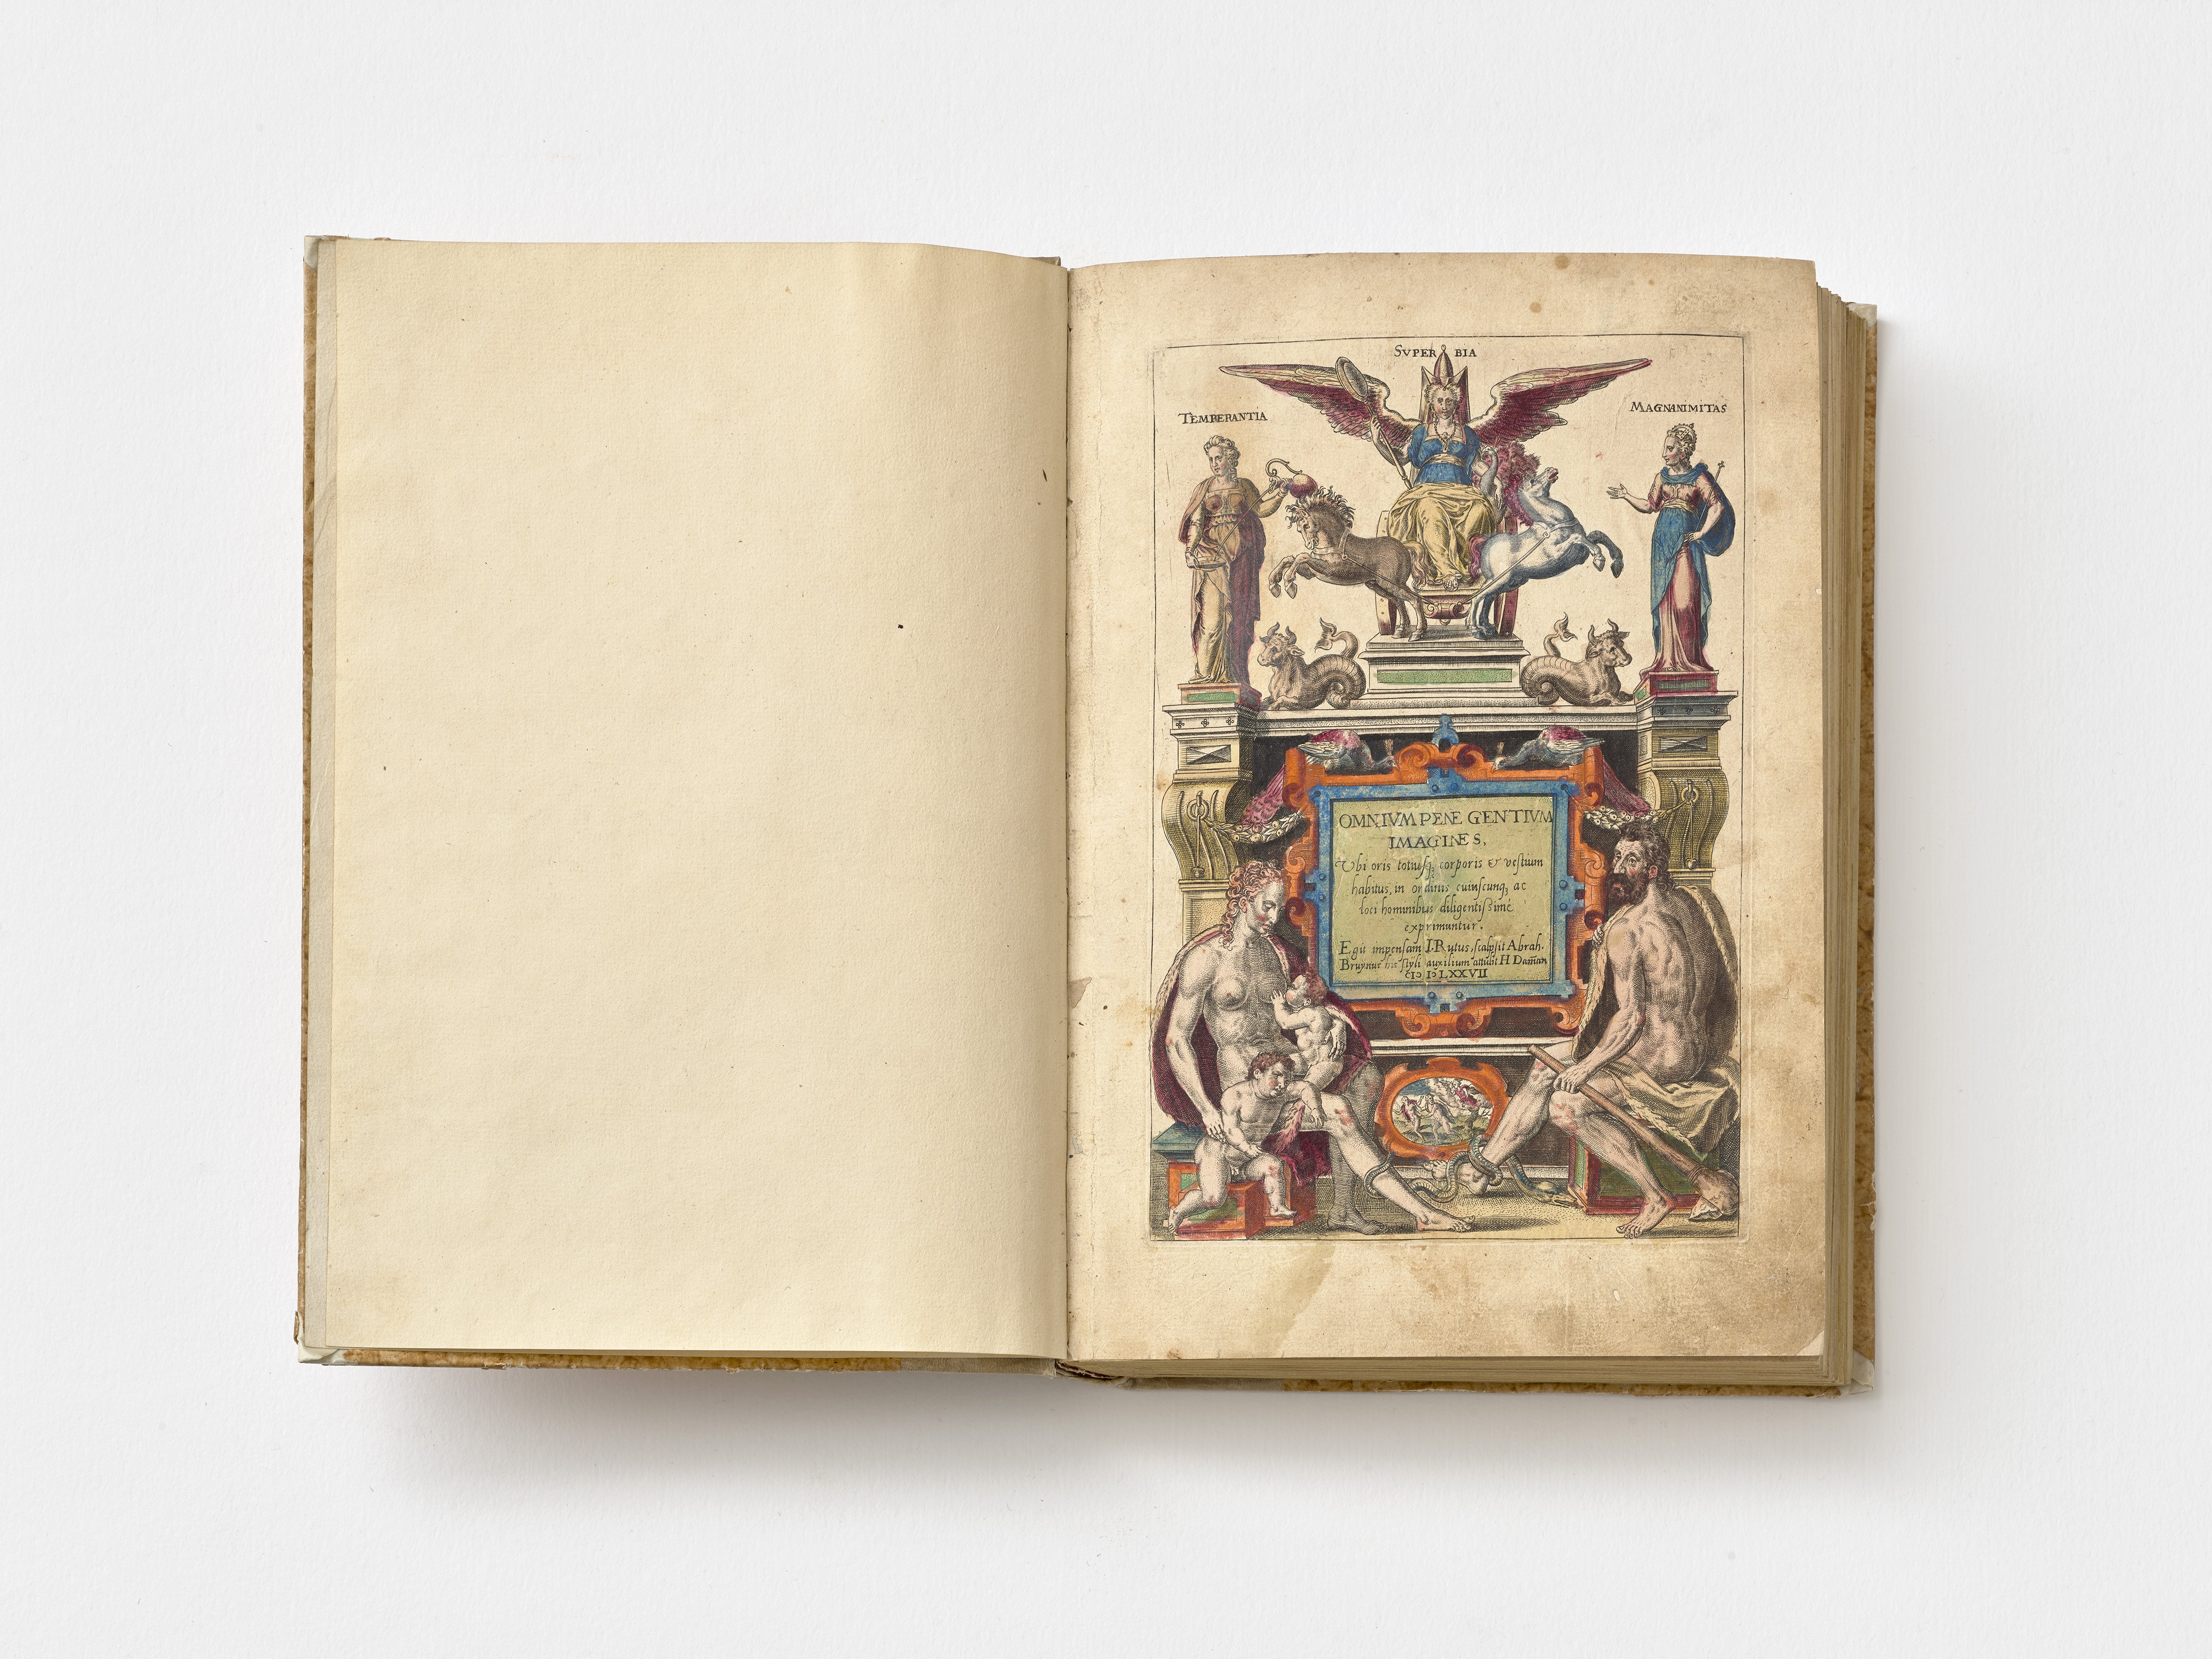 Titelkupfer, Omnium Poene Gentium Imagines, 1577. (Städtisches Museum Schloss Rheydt CC BY)